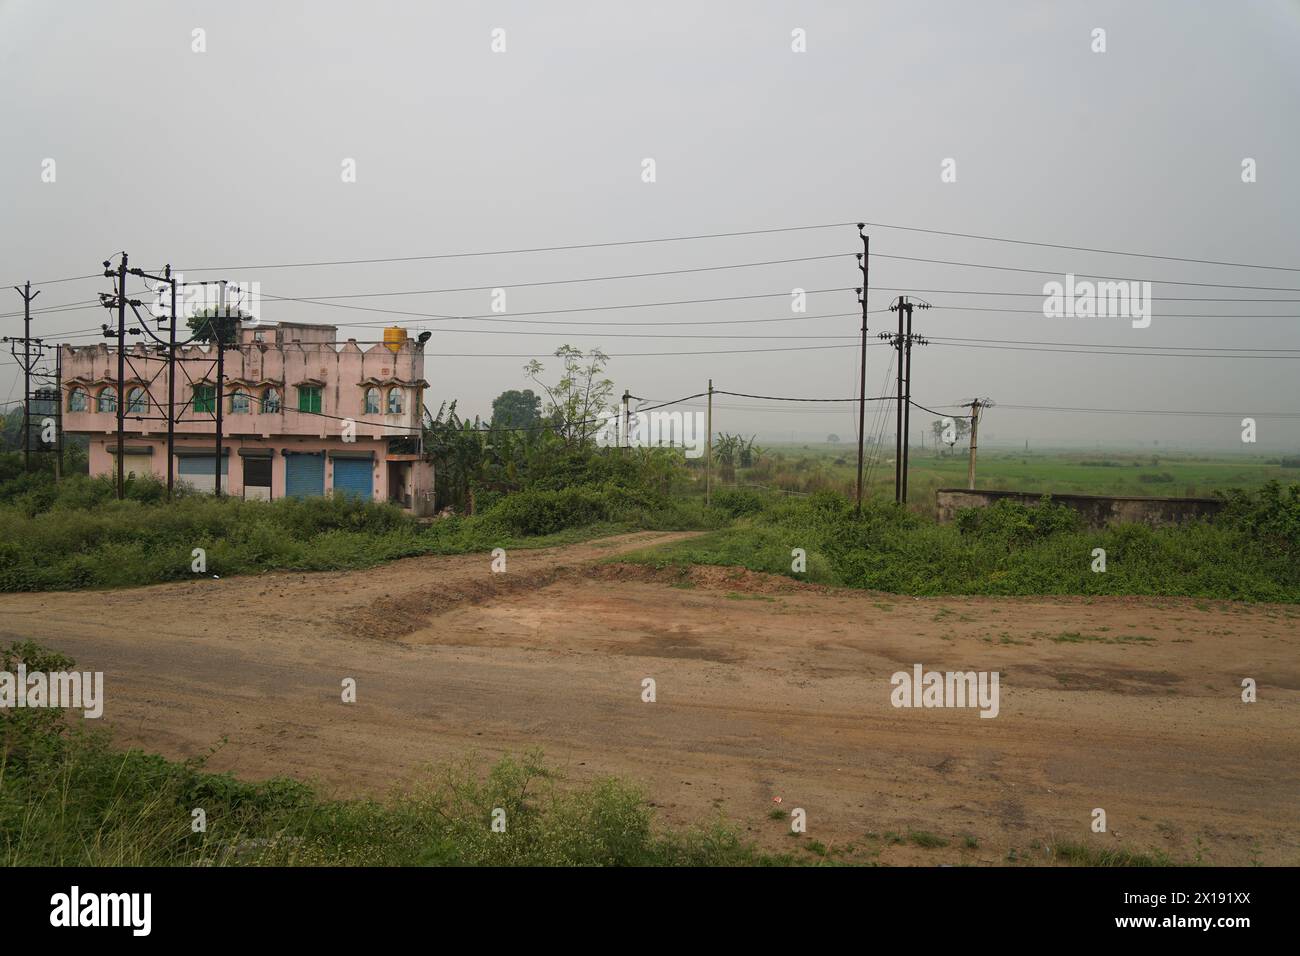 Das umstrittene Land der Tata Nano Automobilfabrik. Neben NH-16. Singur im Bezirk Hoodly, Westbengalen, Indien. Stockfoto